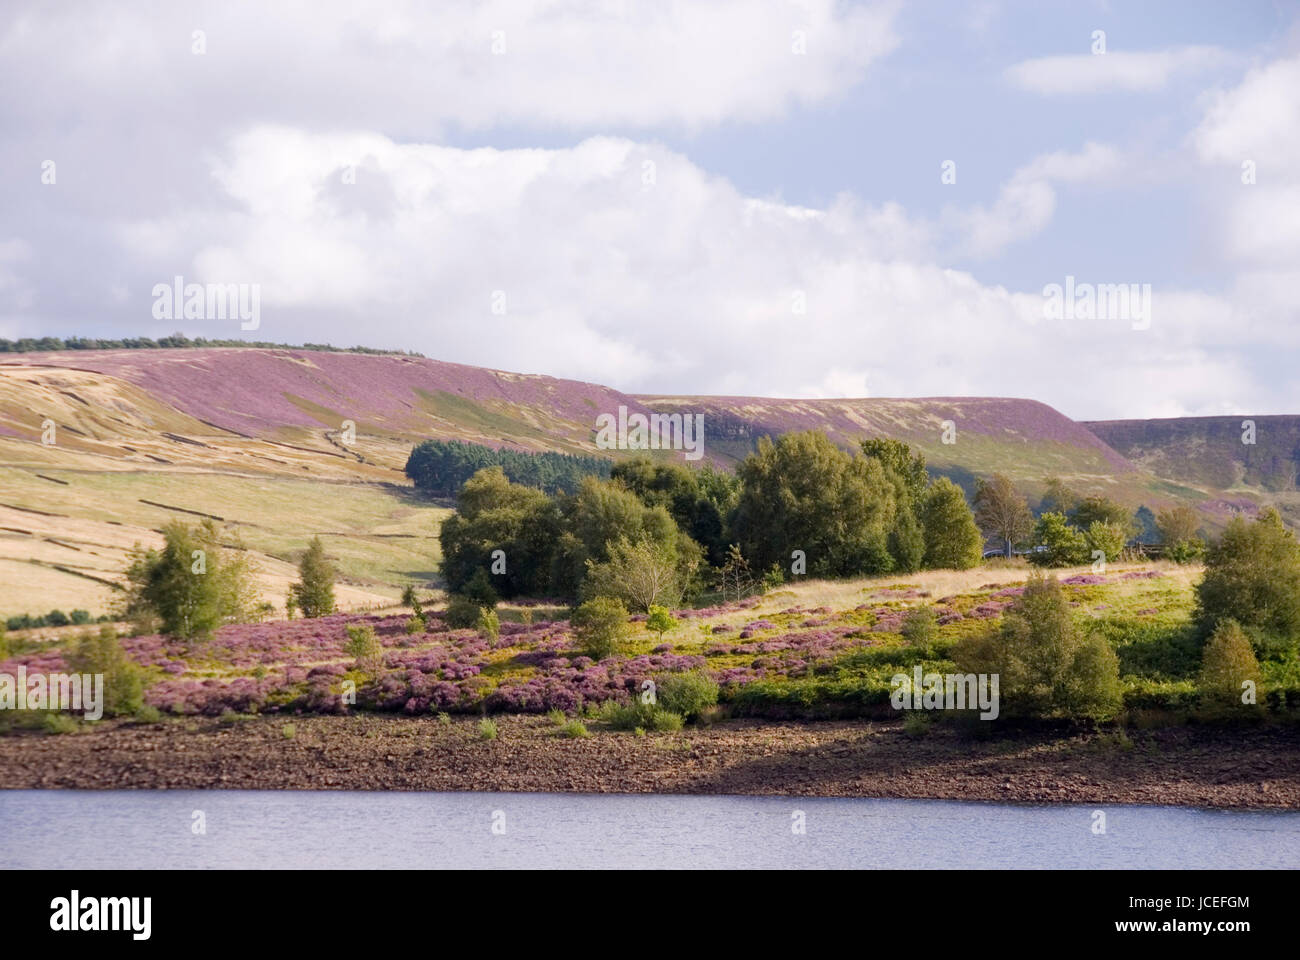 Di colore rosa e verde paesaggio di brughiera con alberi e heather in fiore, Agosto nel Holme Valley, West Yorkshire, Regno Unito Foto Stock